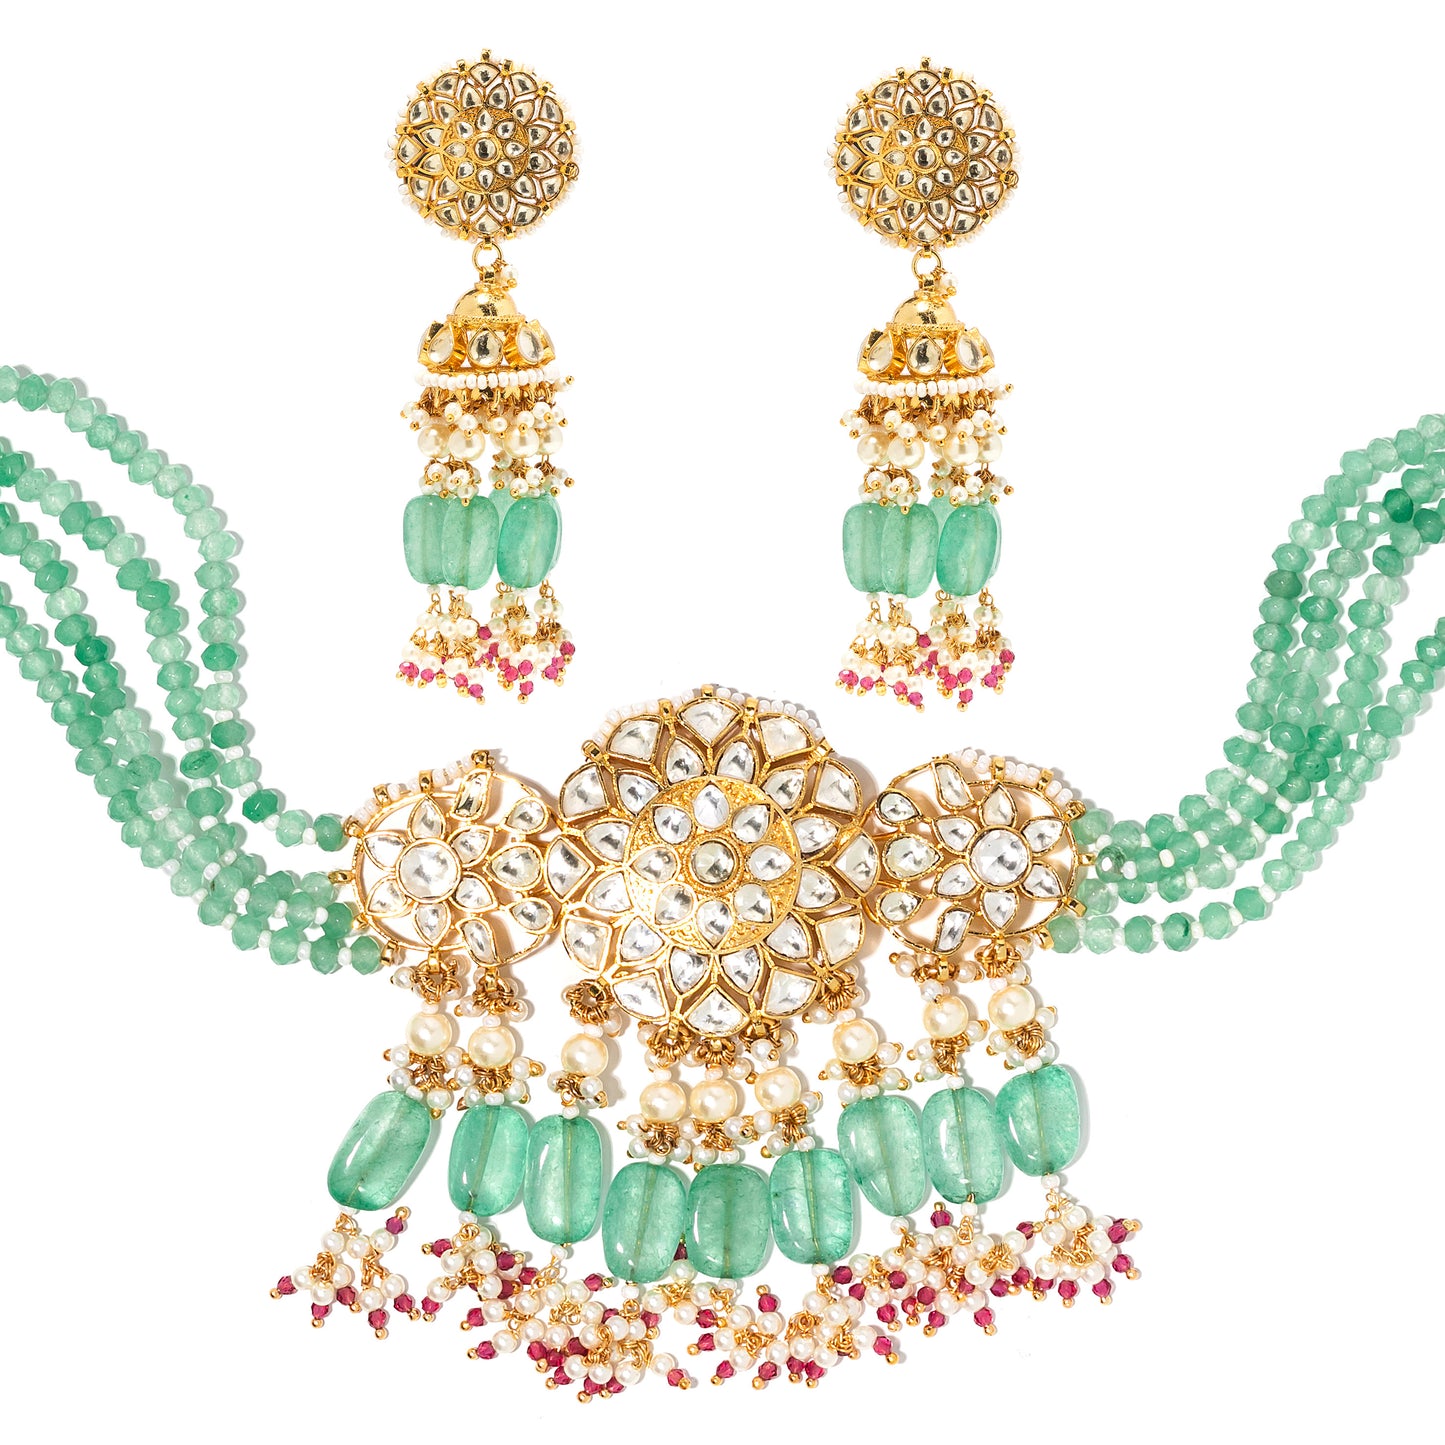 Maya necklace set